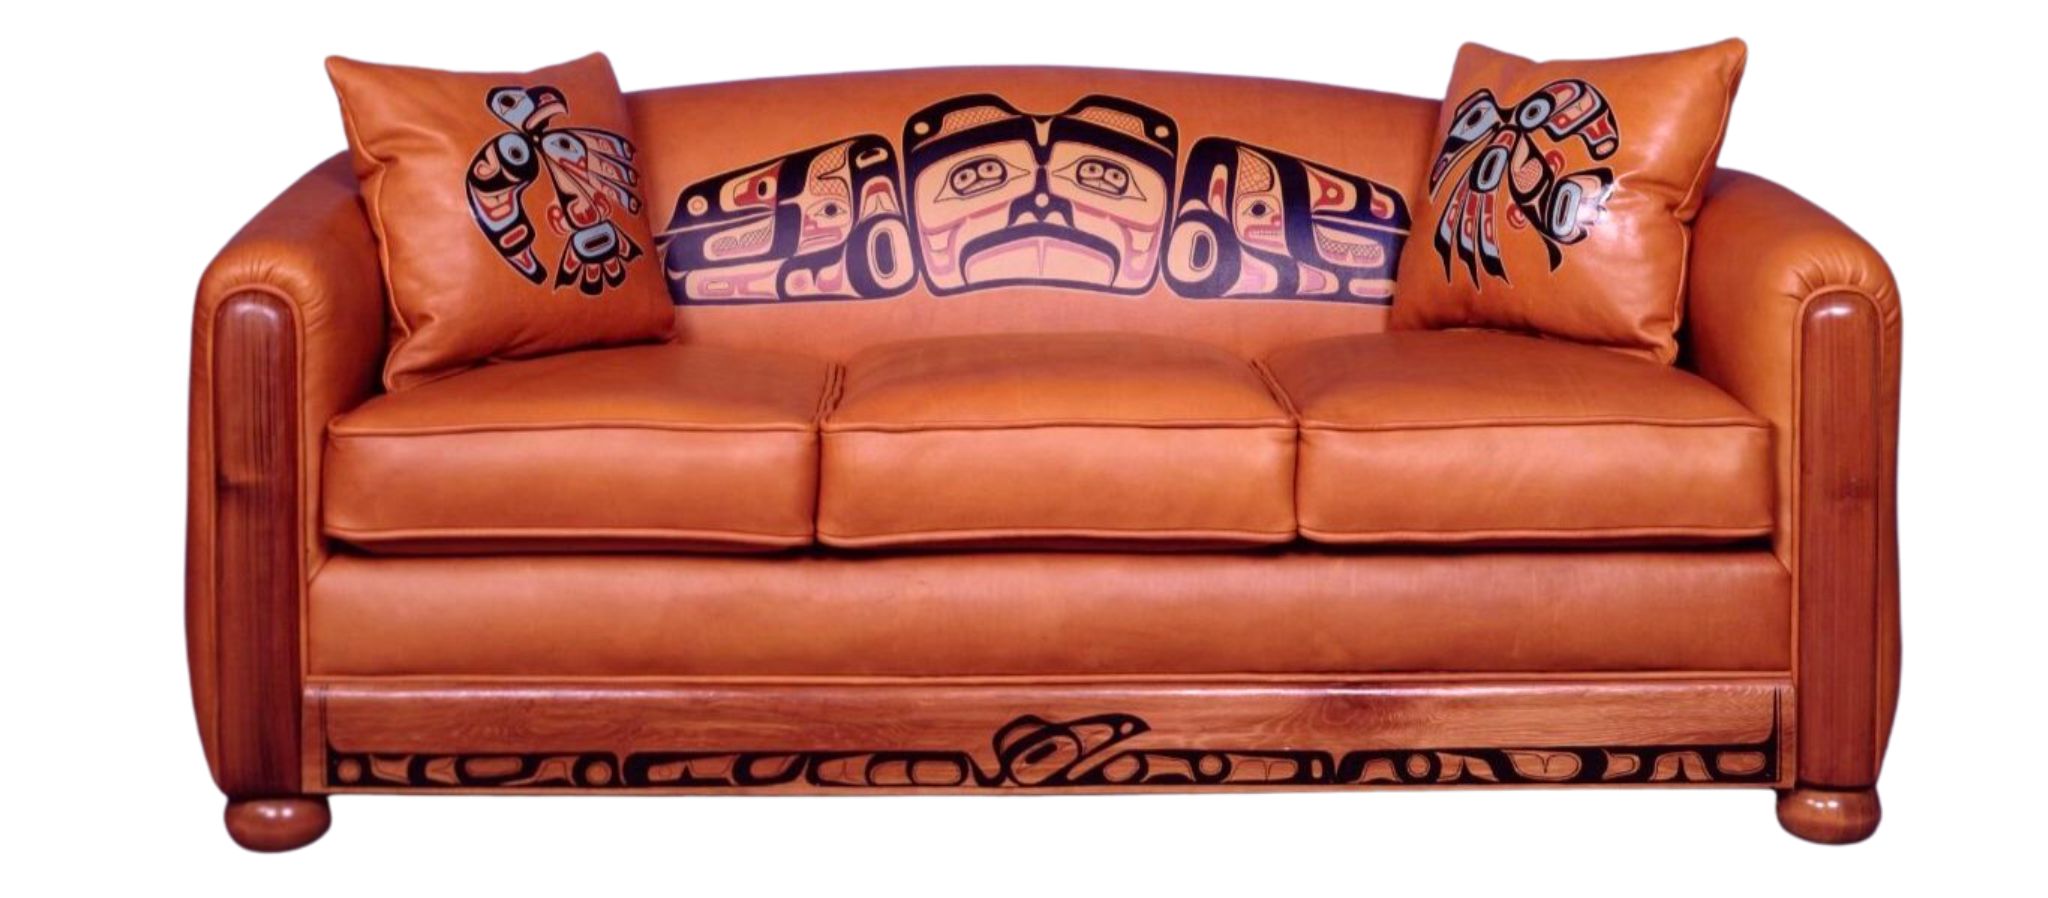 Leather sofa with coastal art